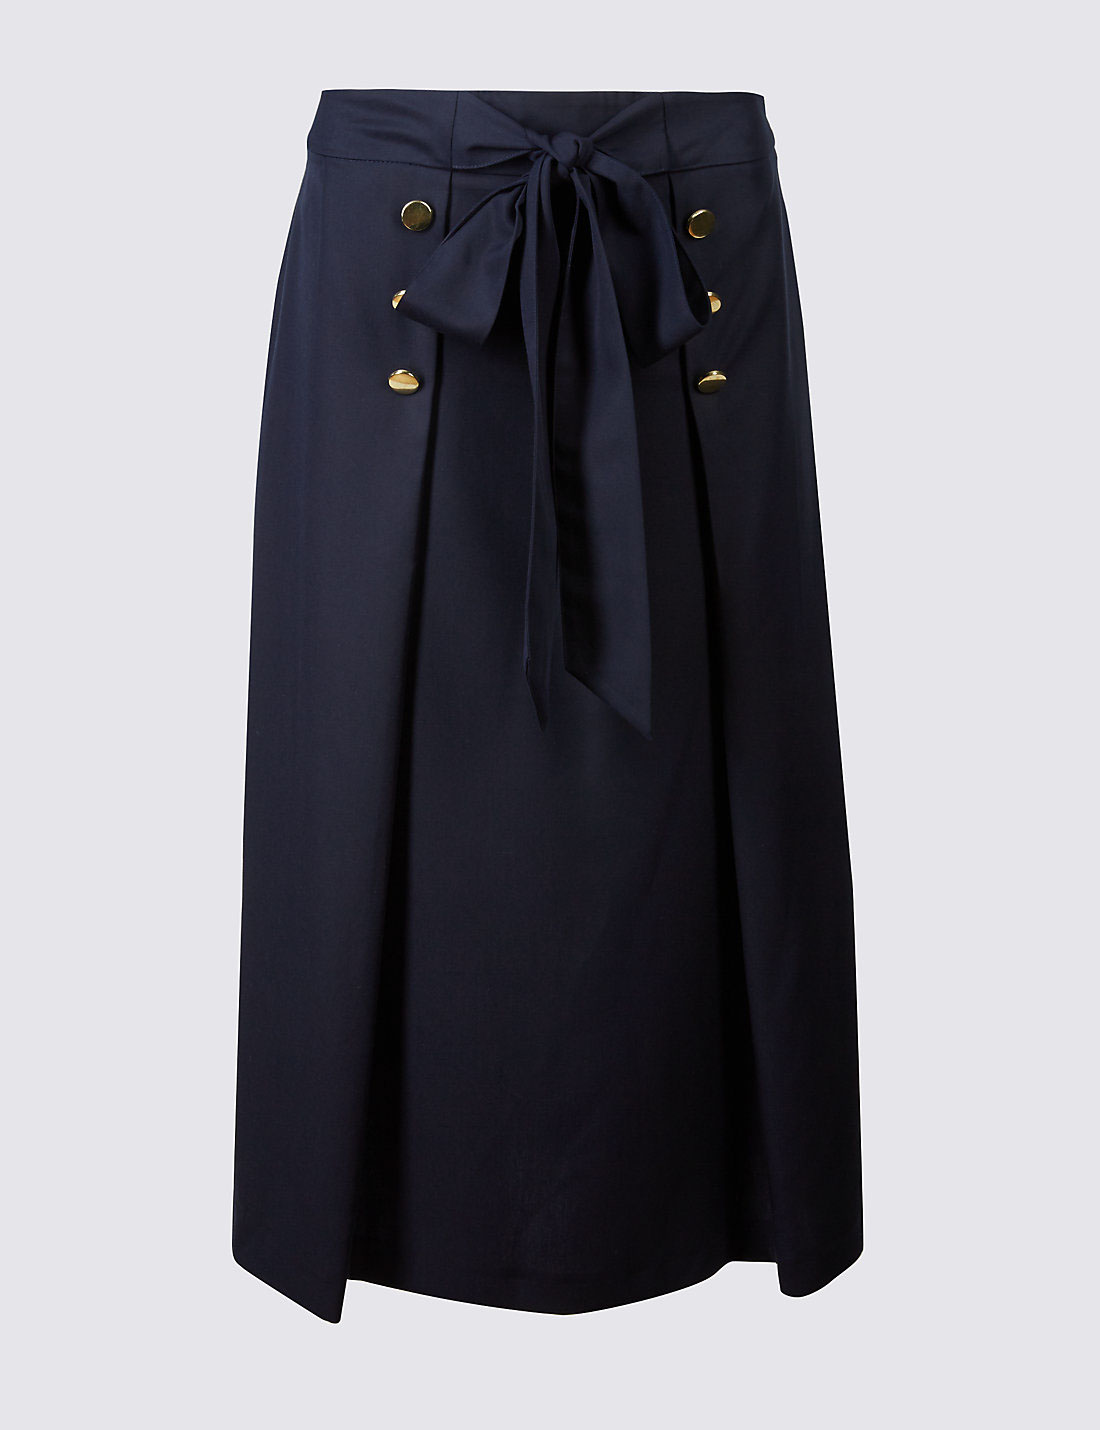 Fashion  design marksandspencer London skirt SS17